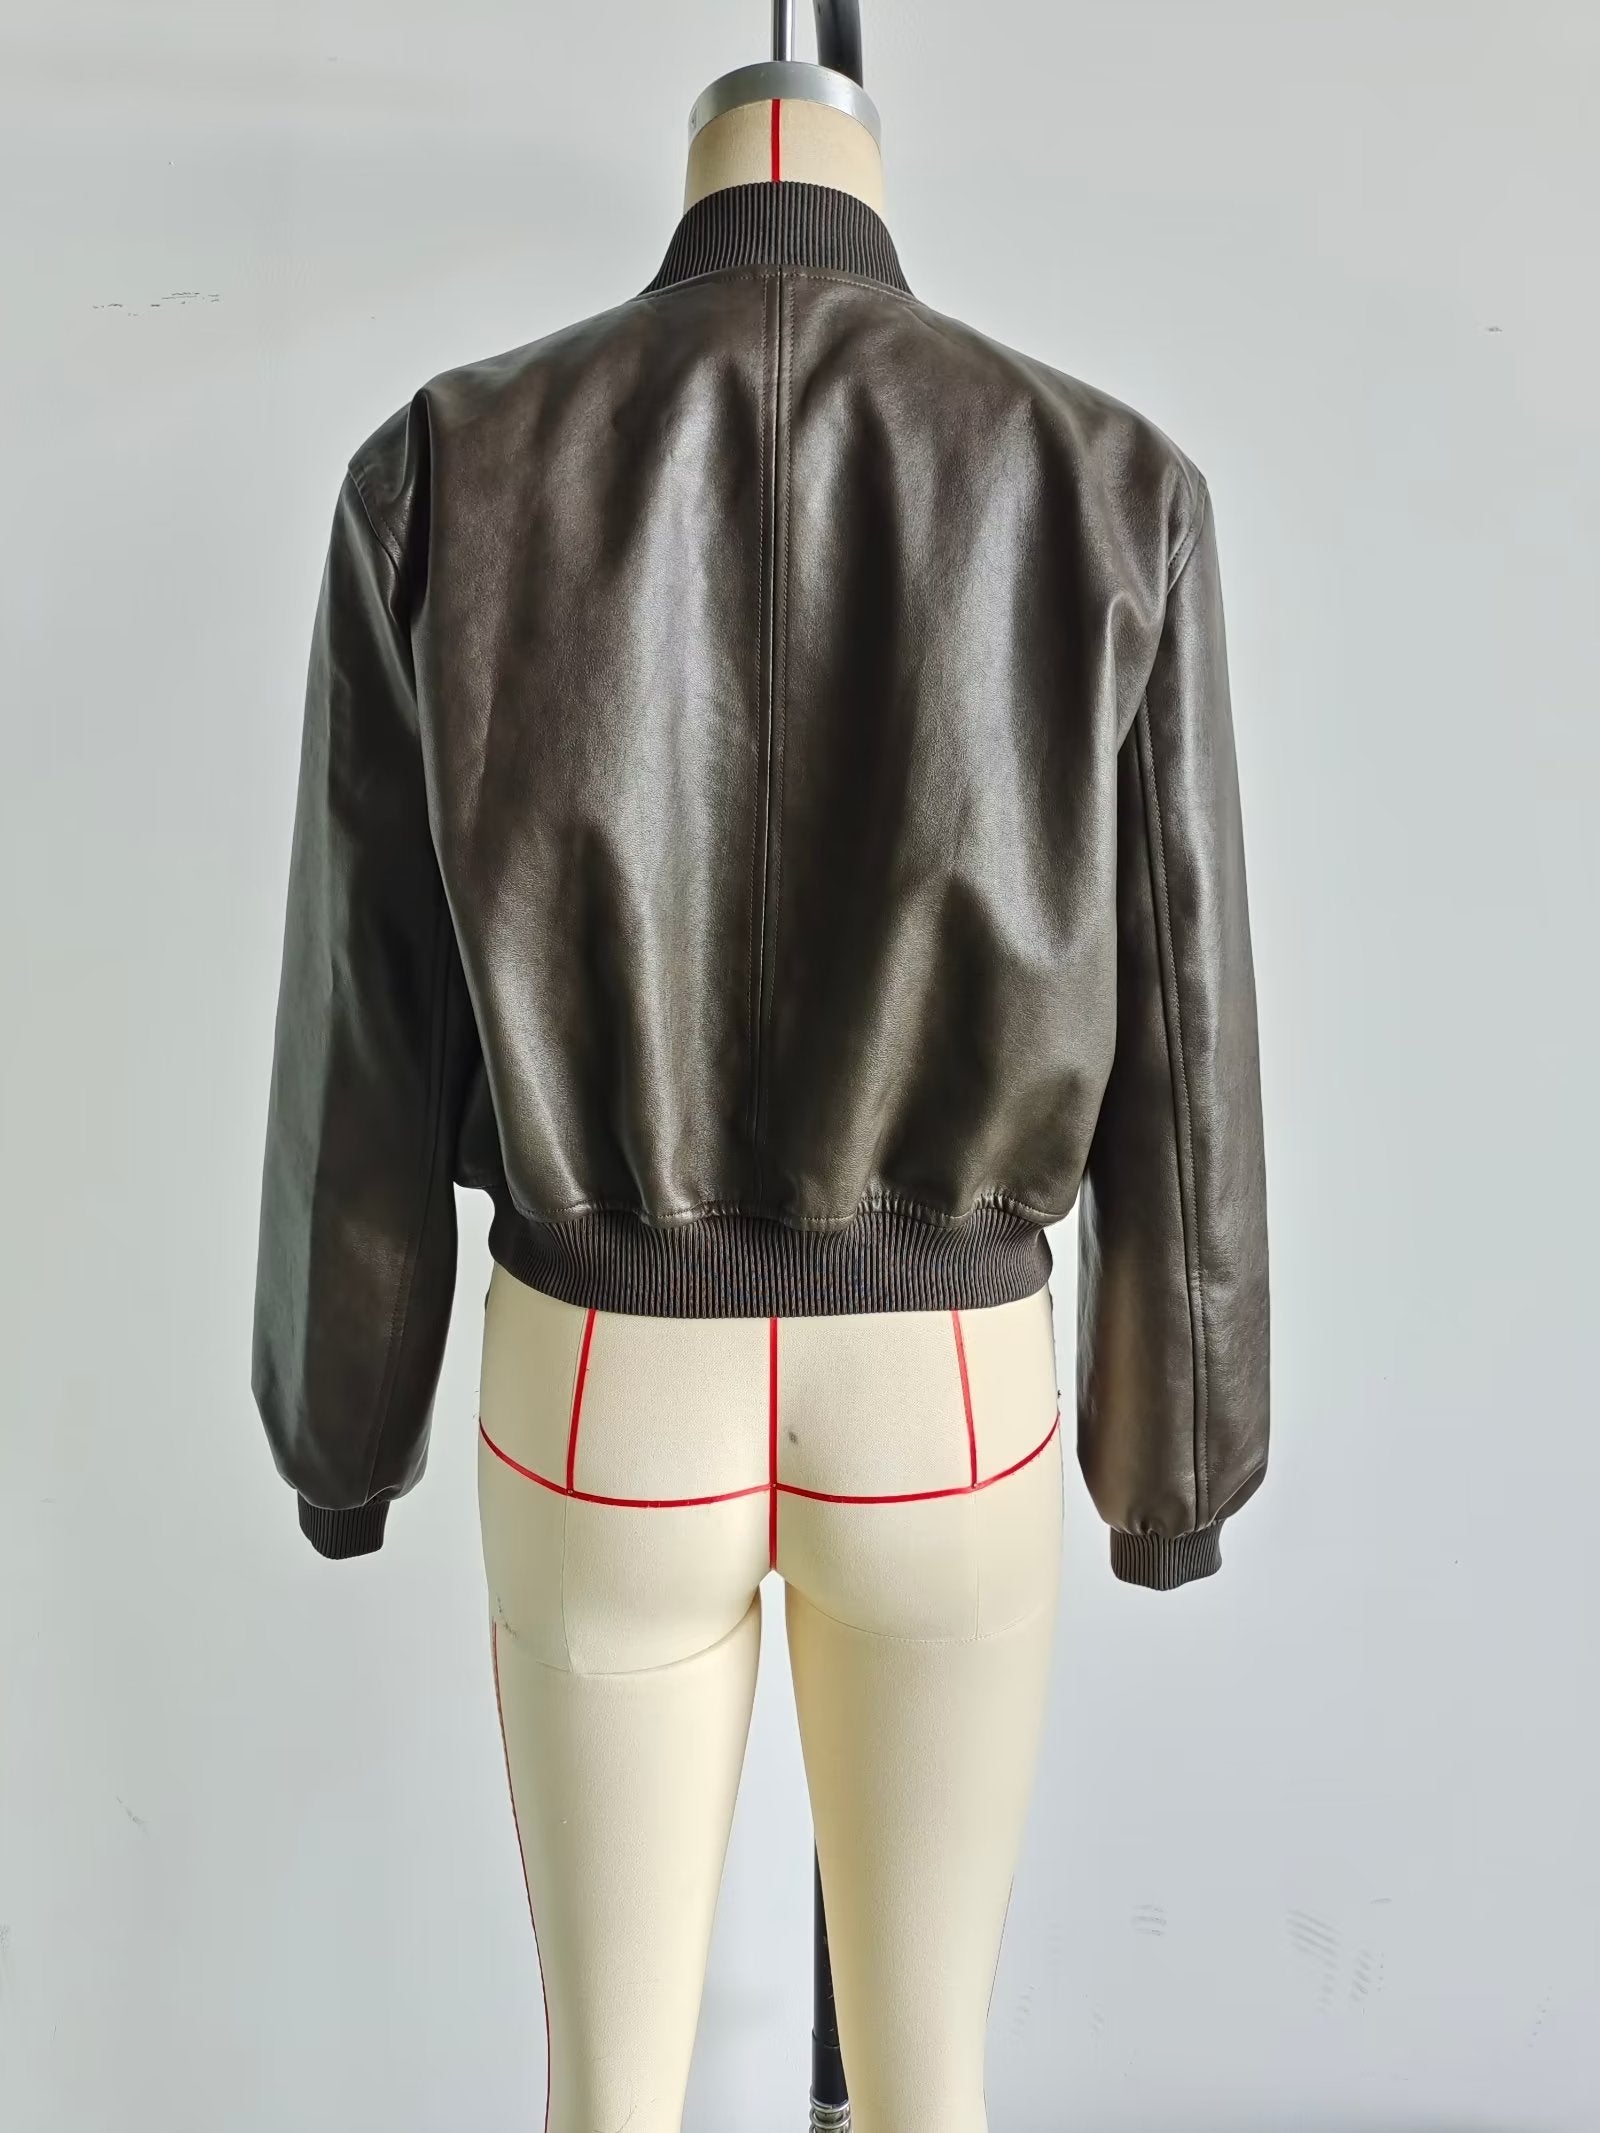 Fall Women Clothing Faux Leather Bomber Jacket Coat